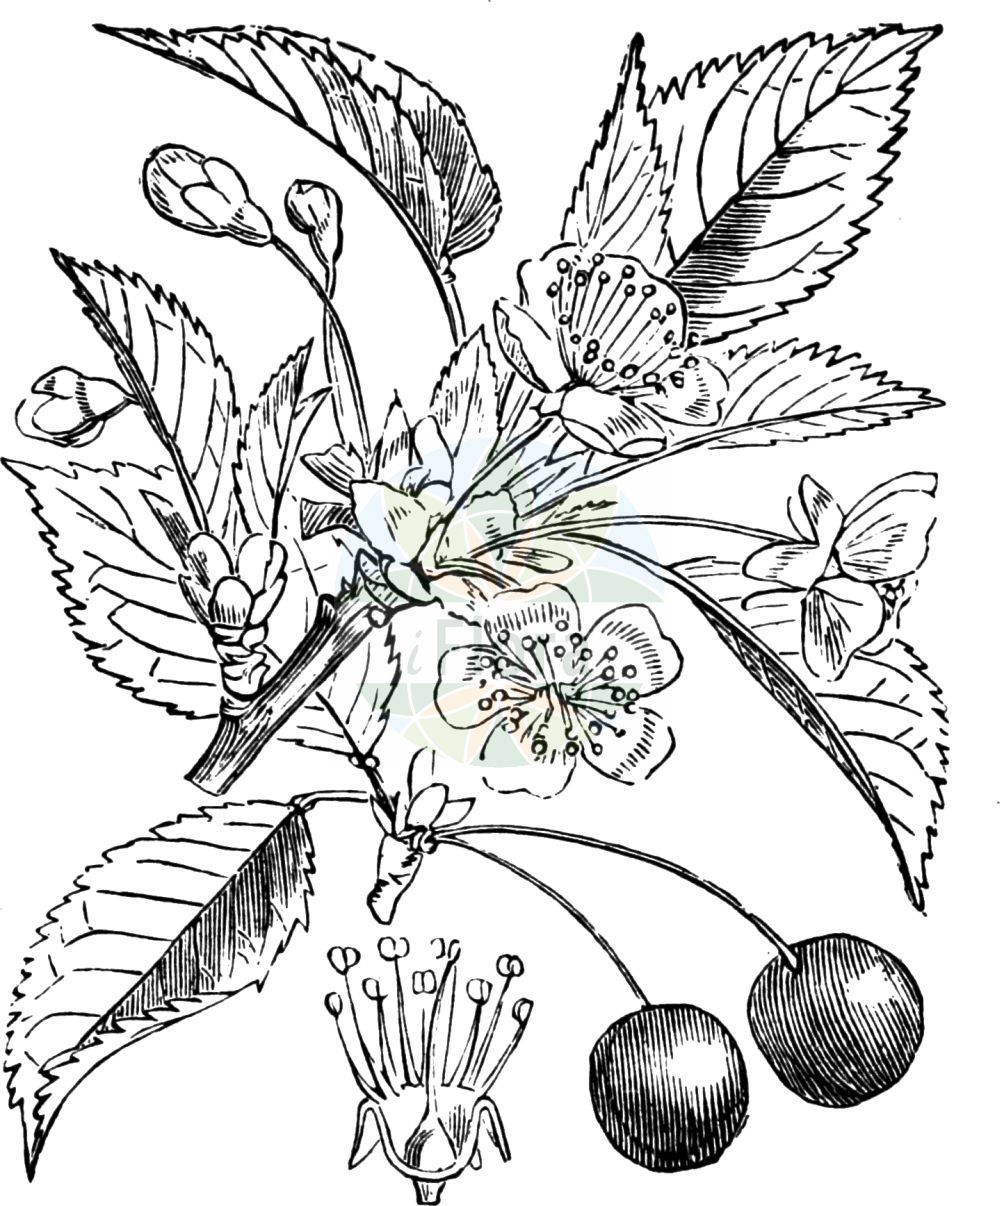 Historische Abbildung von Prunus cerasus (Sauer-Kirsche - Dwarf Cherry). Das Bild zeigt Blatt, Bluete, Frucht und Same. ---- Historical Drawing of Prunus cerasus (Sauer-Kirsche - Dwarf Cherry). The image is showing leaf, flower, fruit and seed.(Prunus cerasus,Sauer-Kirsche,Dwarf Cherry,Cerasus acida,Cerasus austera,Cerasus collina,Cerasus vulgaris,Prunus acida,Prunus caproniana,Prunus cerasus,Prunus cerasus subsp. acida,Sauer-Kirsche,Baum-Sauer-Kirsche,Strauch-Weichsel,Weichsel,Dwarf Cherry,Amarello Cherry,Sour Cherry,Tart Cherry,Prunus,Kirsche,Plum,Rosaceae,Rosengewächse,Rose family,Blatt,Bluete,Frucht,Same,leaf,flower,fruit,seed,Fitch et al. (1880))